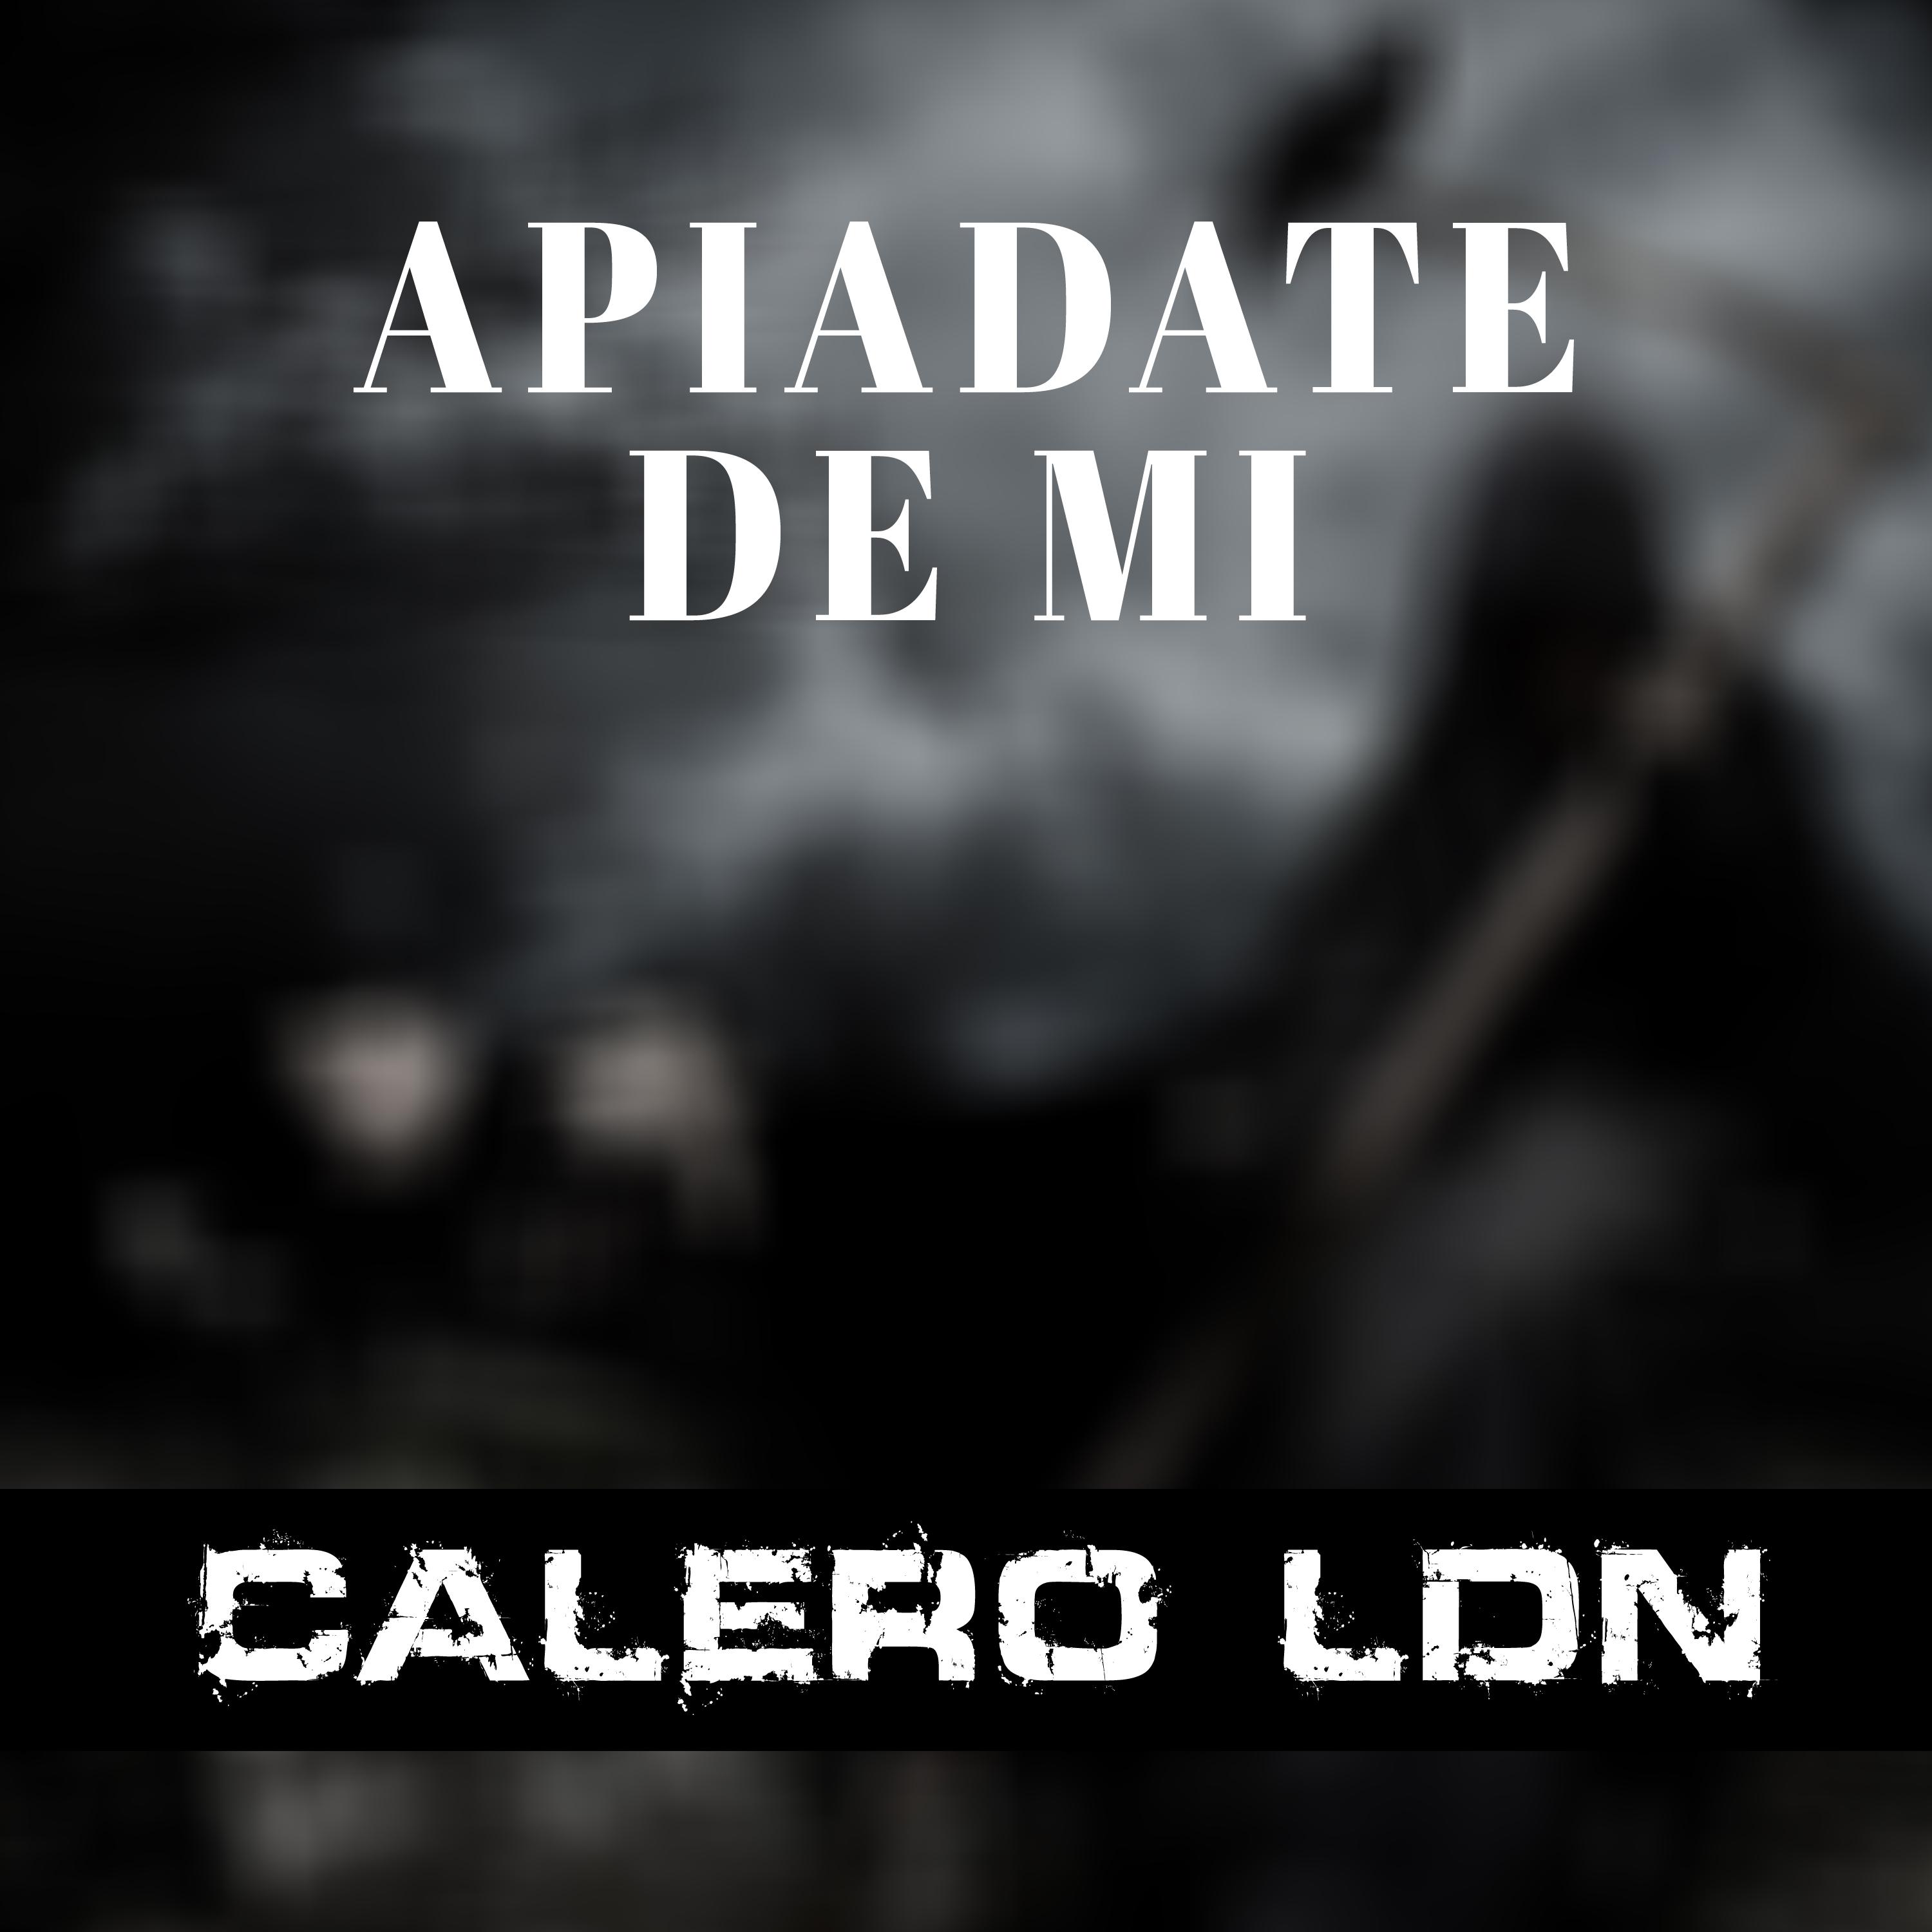 Apia date de Mi Iker  Calero Vol. 4